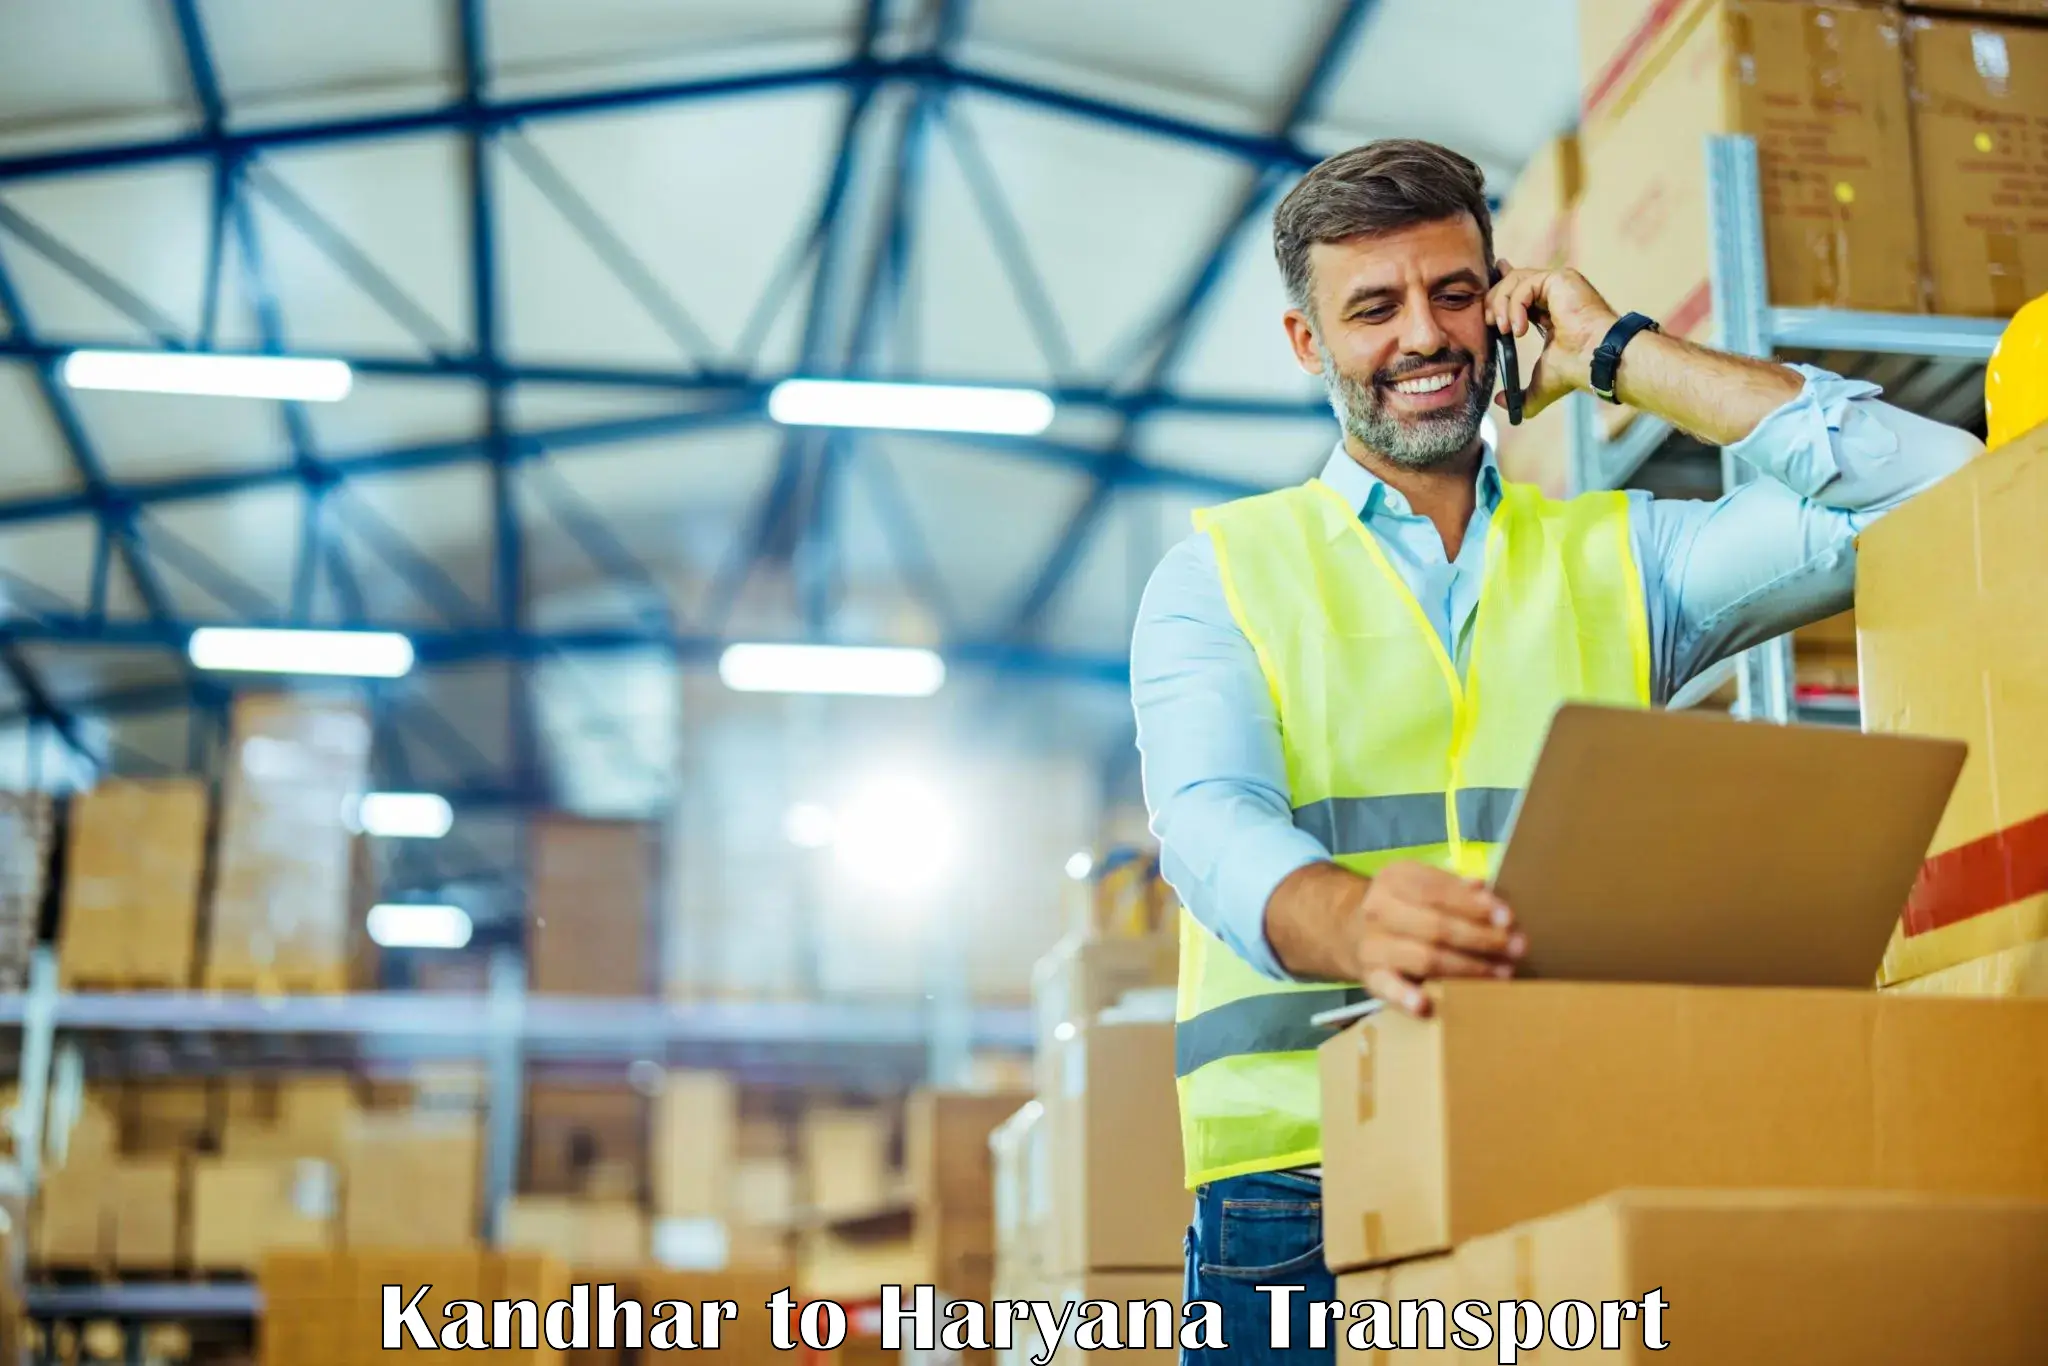 Daily parcel service transport Kandhar to Chirya